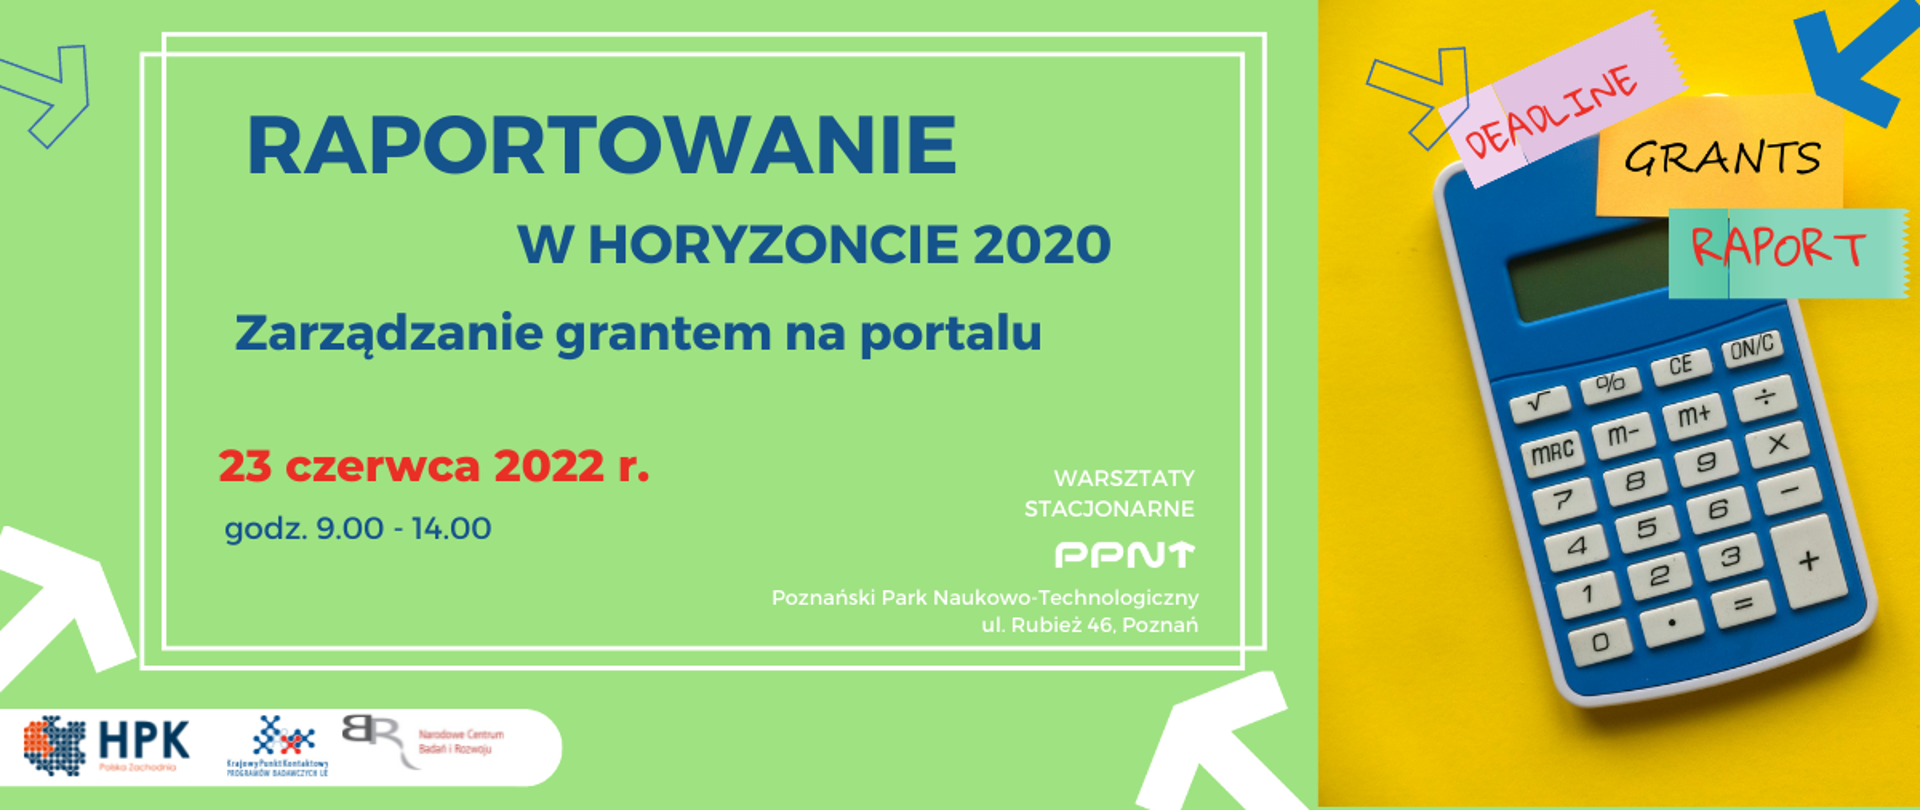 RAPORTOWANIE W HORYZONCIE 2020 Zarządzanie grantem na portalu
